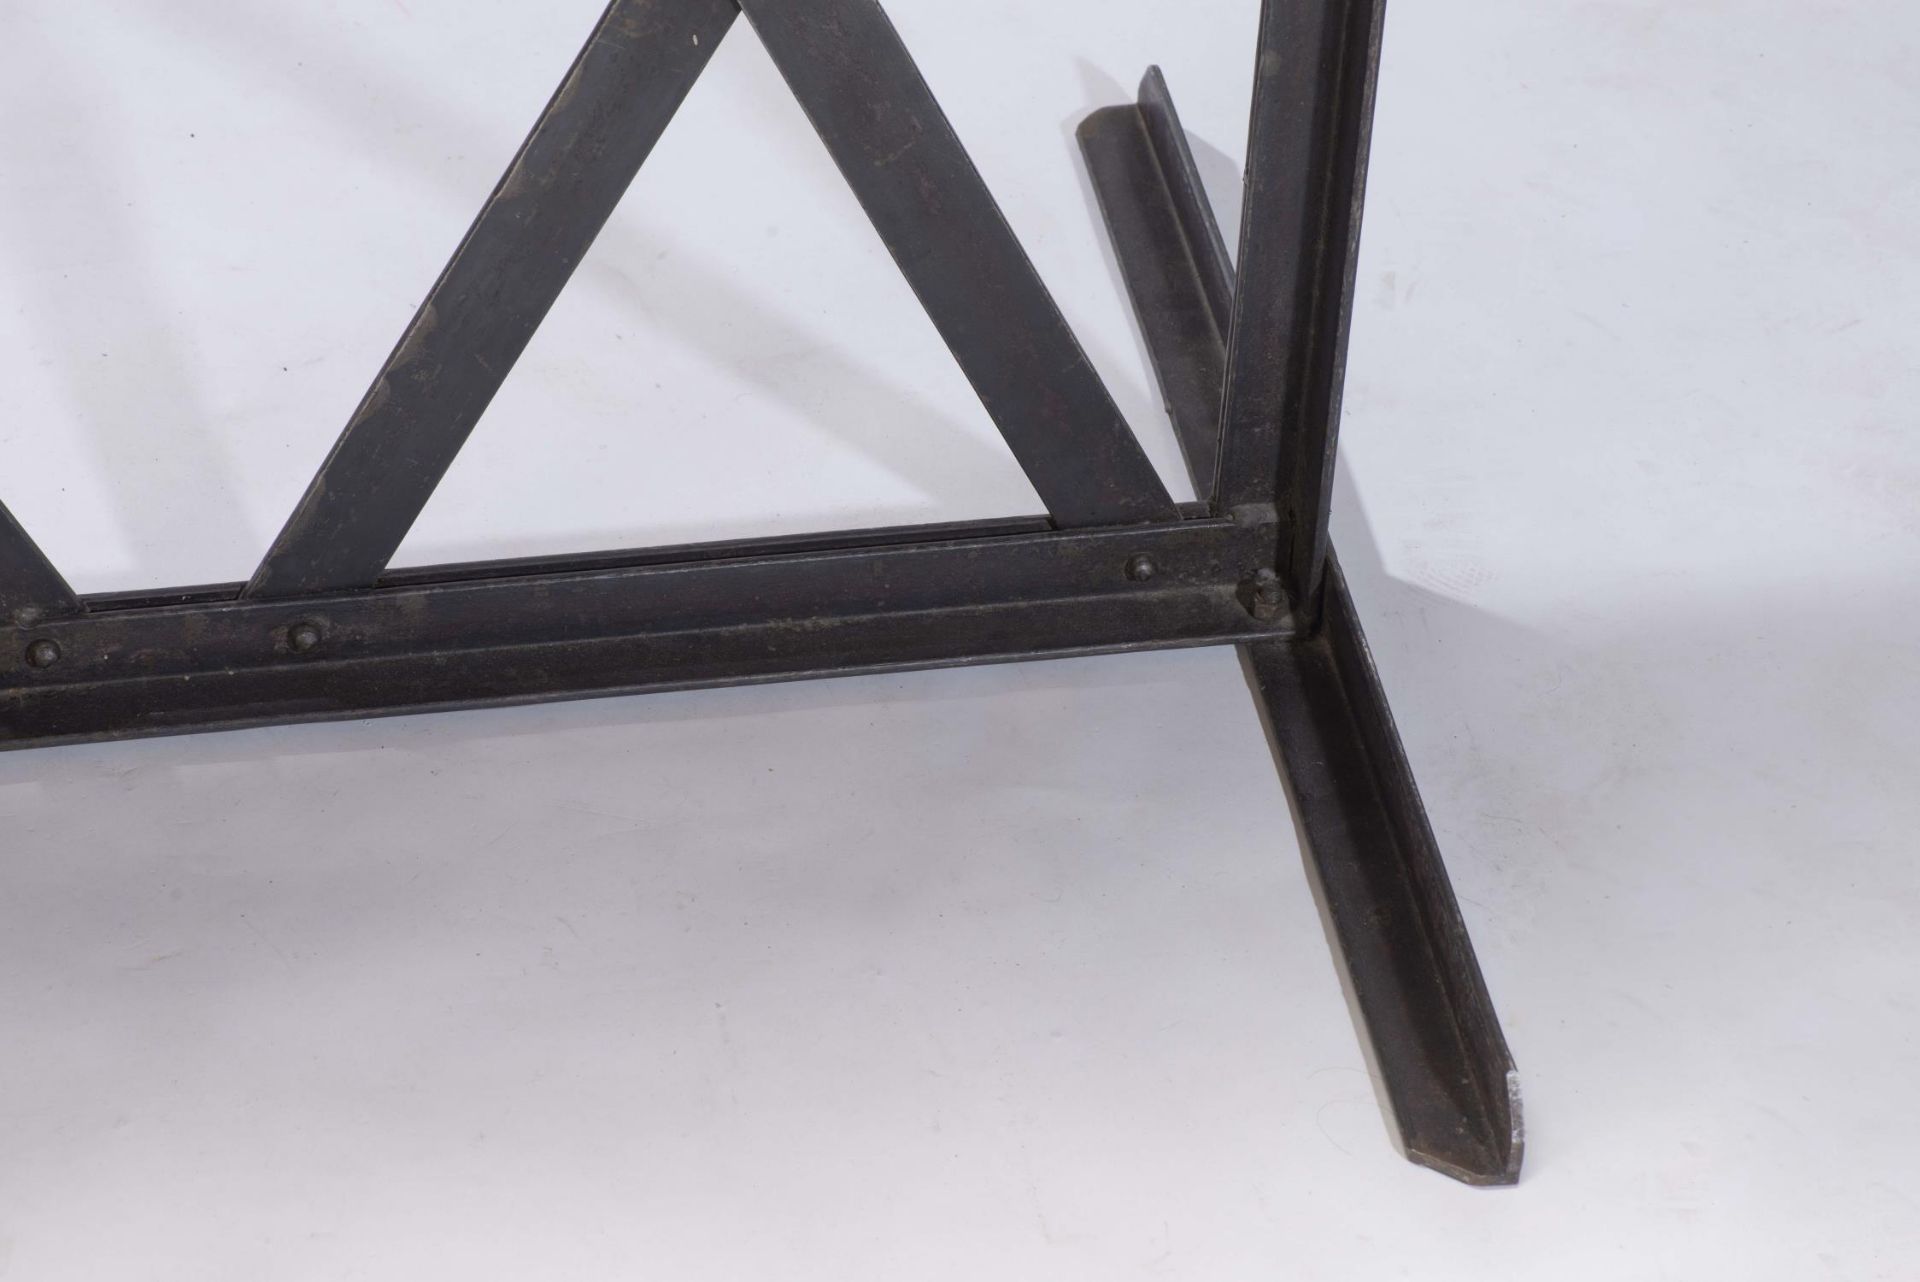 Table de style industriel - Table de style industriel, piètement en métal noir, [...] - Bild 3 aus 6